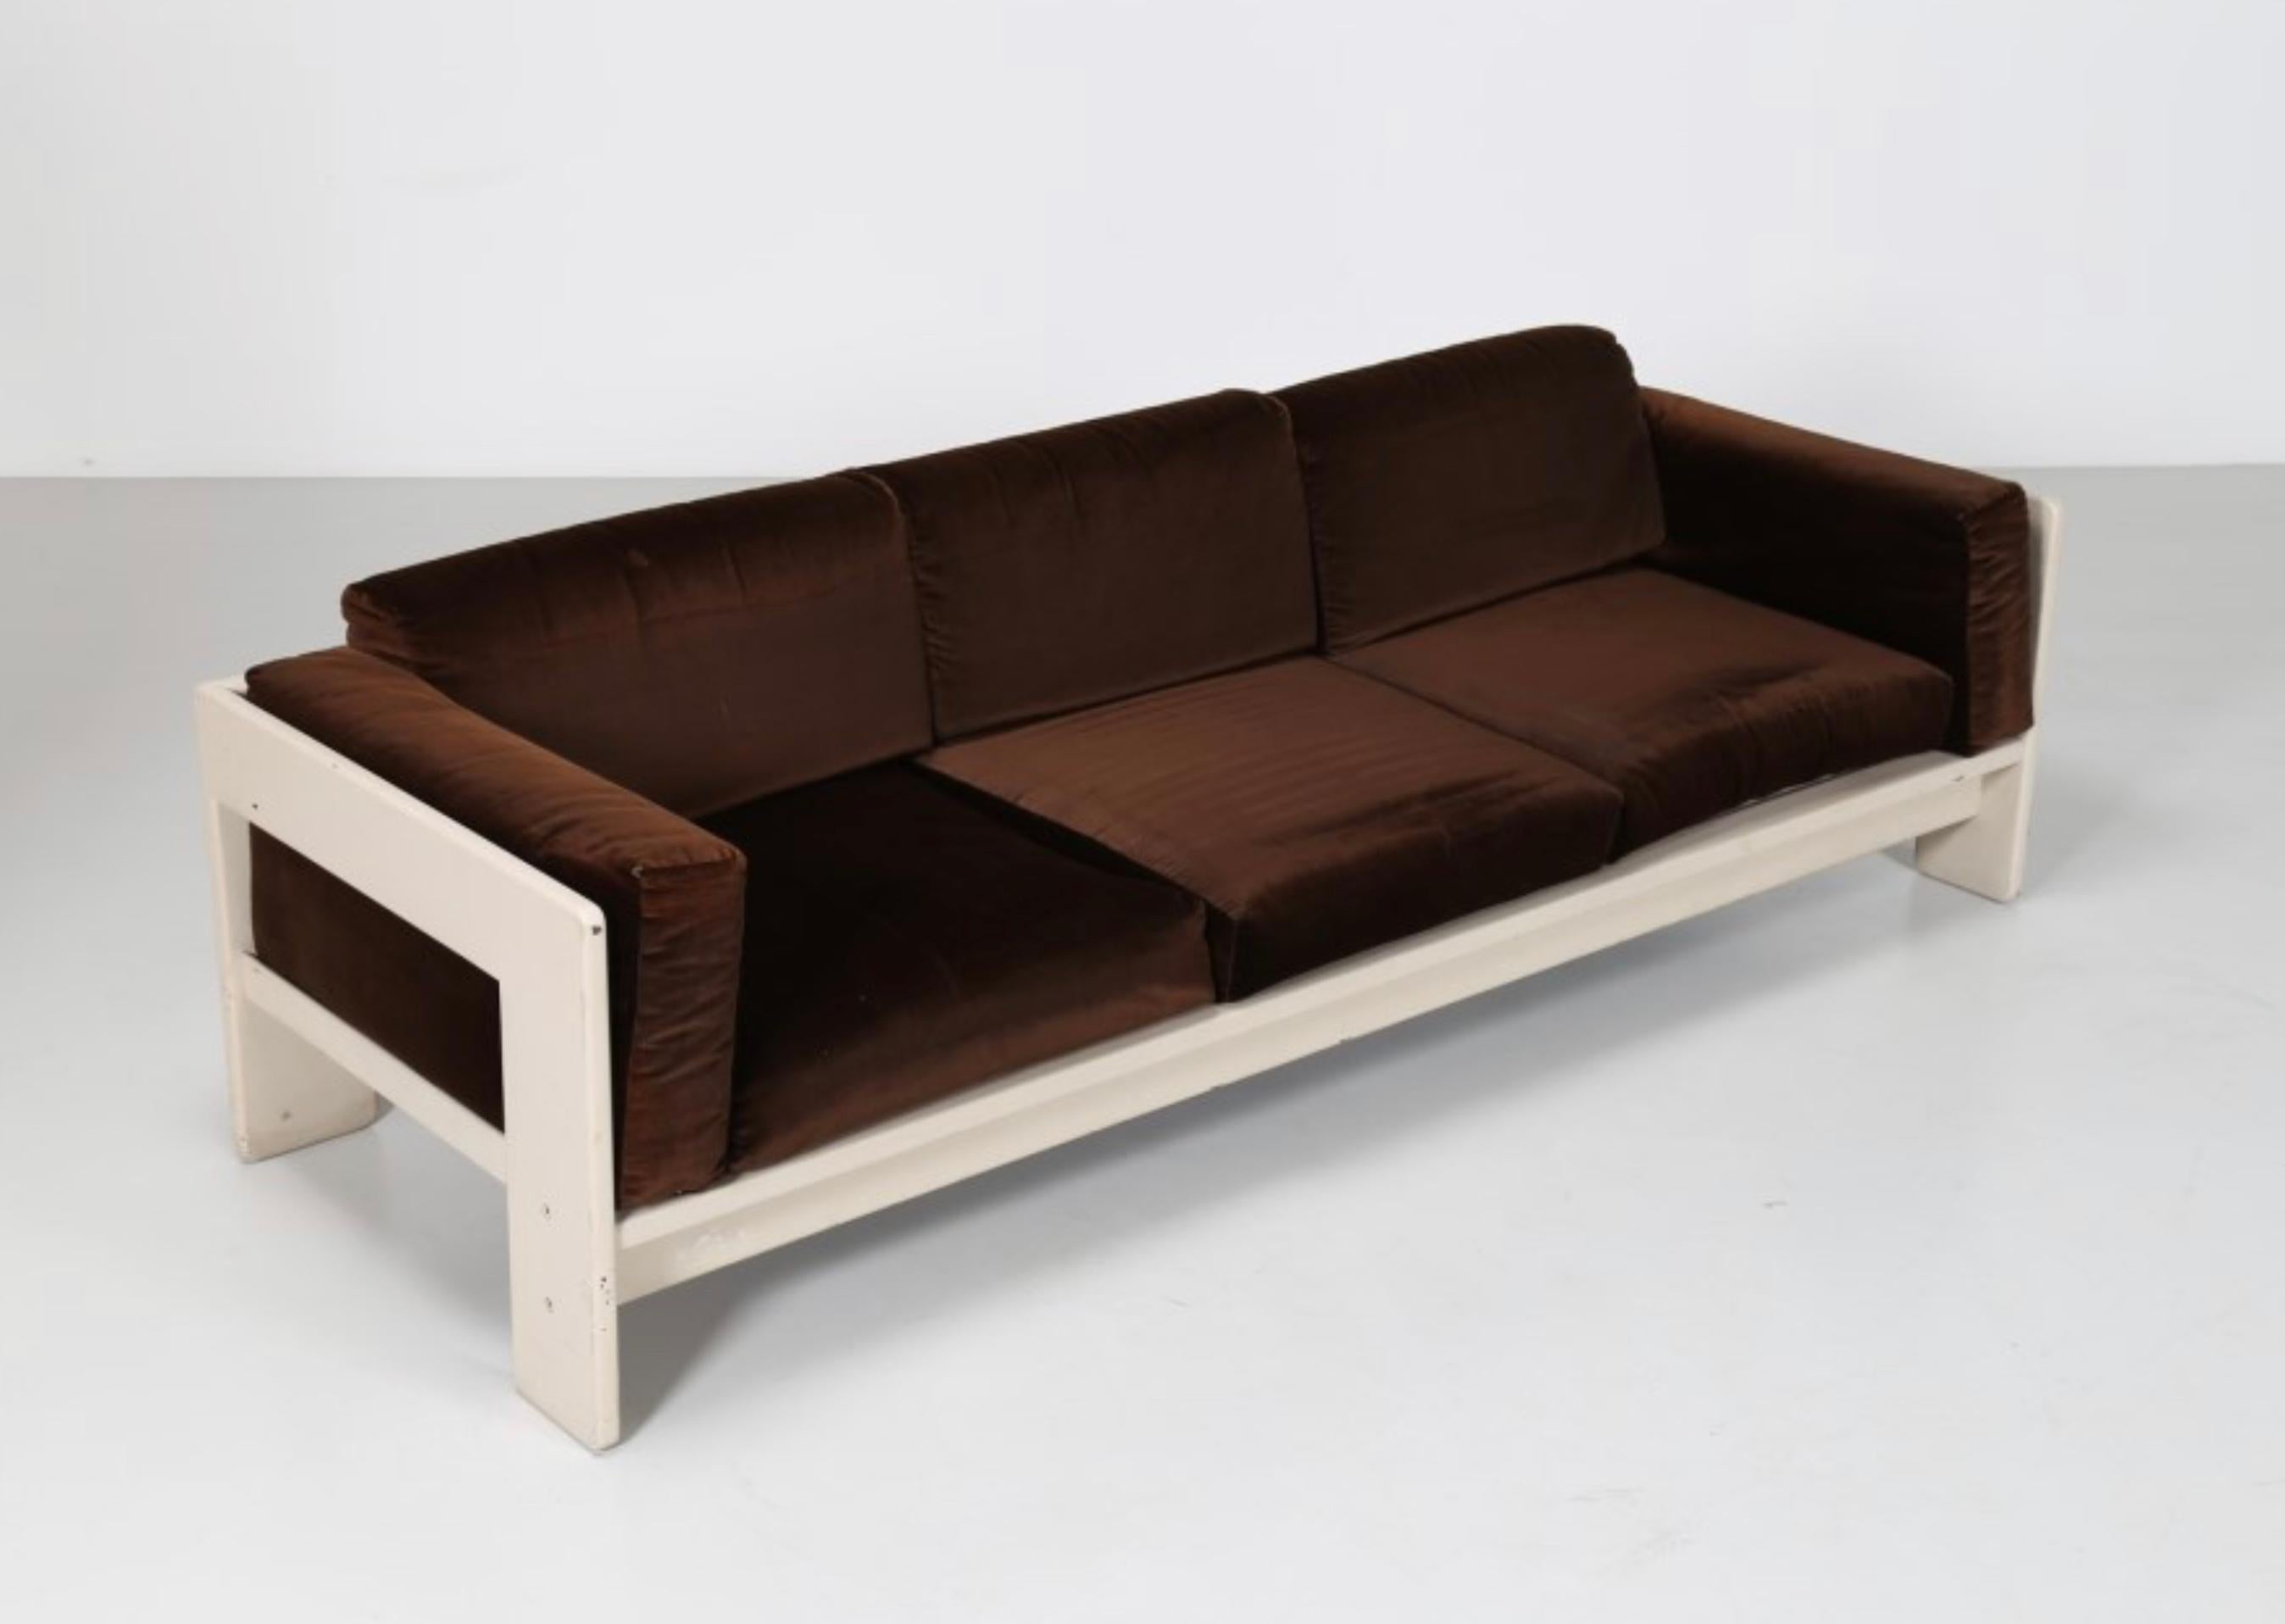 Weiß lackiertes sofa 3 sitze modell Bastiano von Tobia Scarpa für Gavina italien 1960s
Das Lot ist in einem guten Gesamtzustand, ohne Risse oder fehlende Teile.
Der Holzrahmen weist keine Mängel auf, die Polsterung hat Abnutzungserscheinungen und